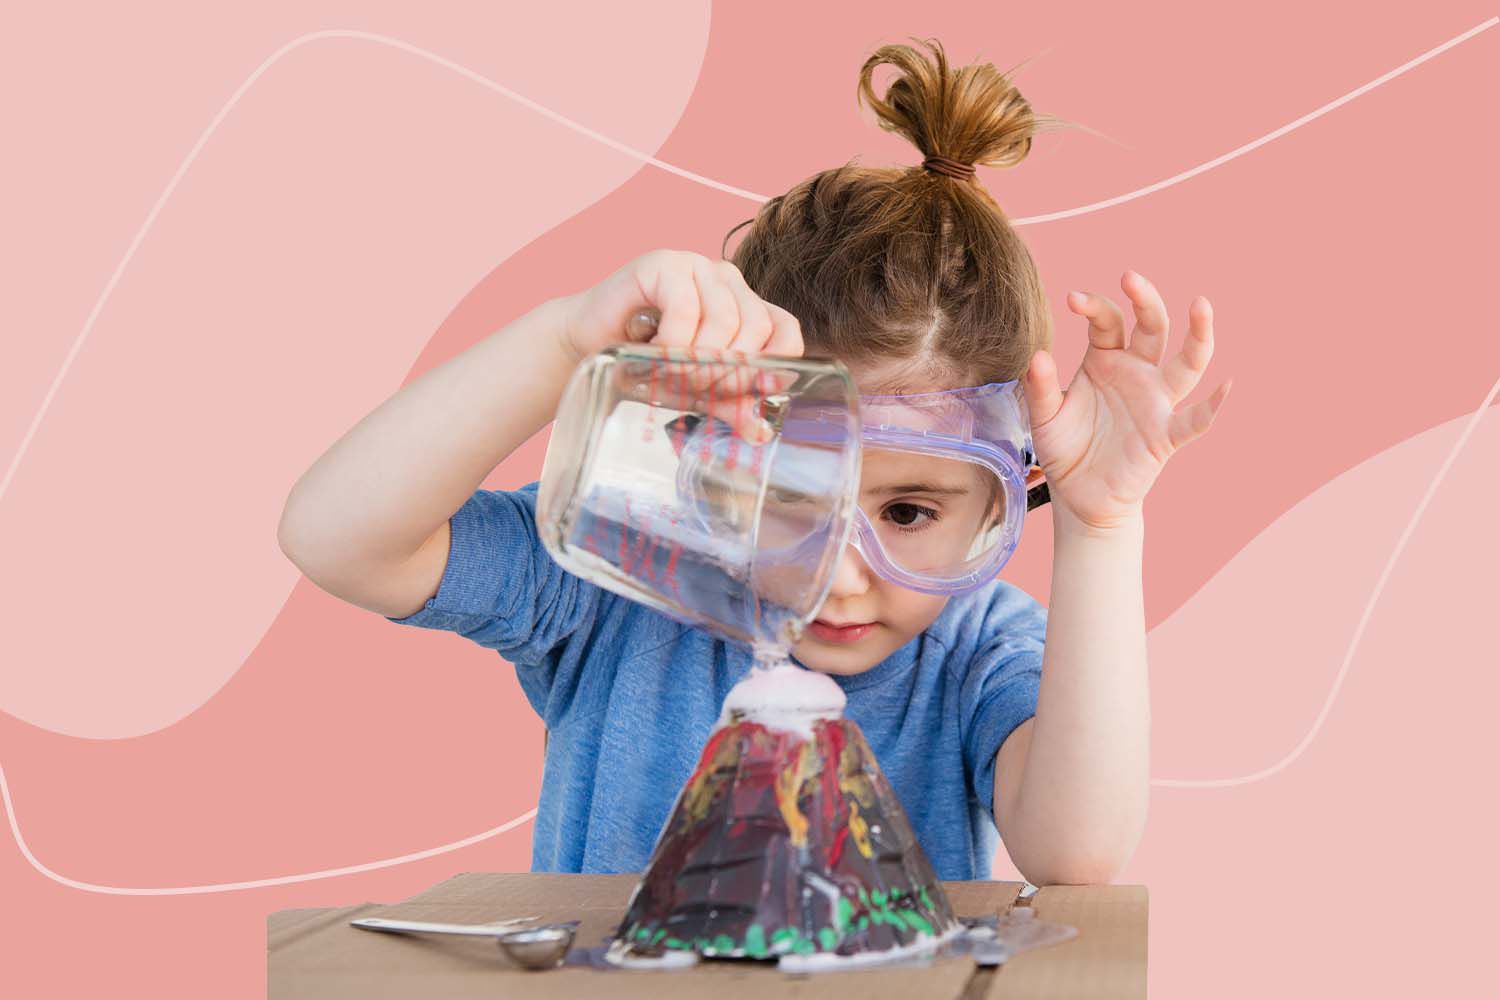 科學實驗玩具是一種能夠啟發孩子們對科學知識和技能的實驗玩具，根據物理、化學、生物等科學原理設計製造，富有教育價值和趣味性，可以幫助孩子們在邊玩邊學。